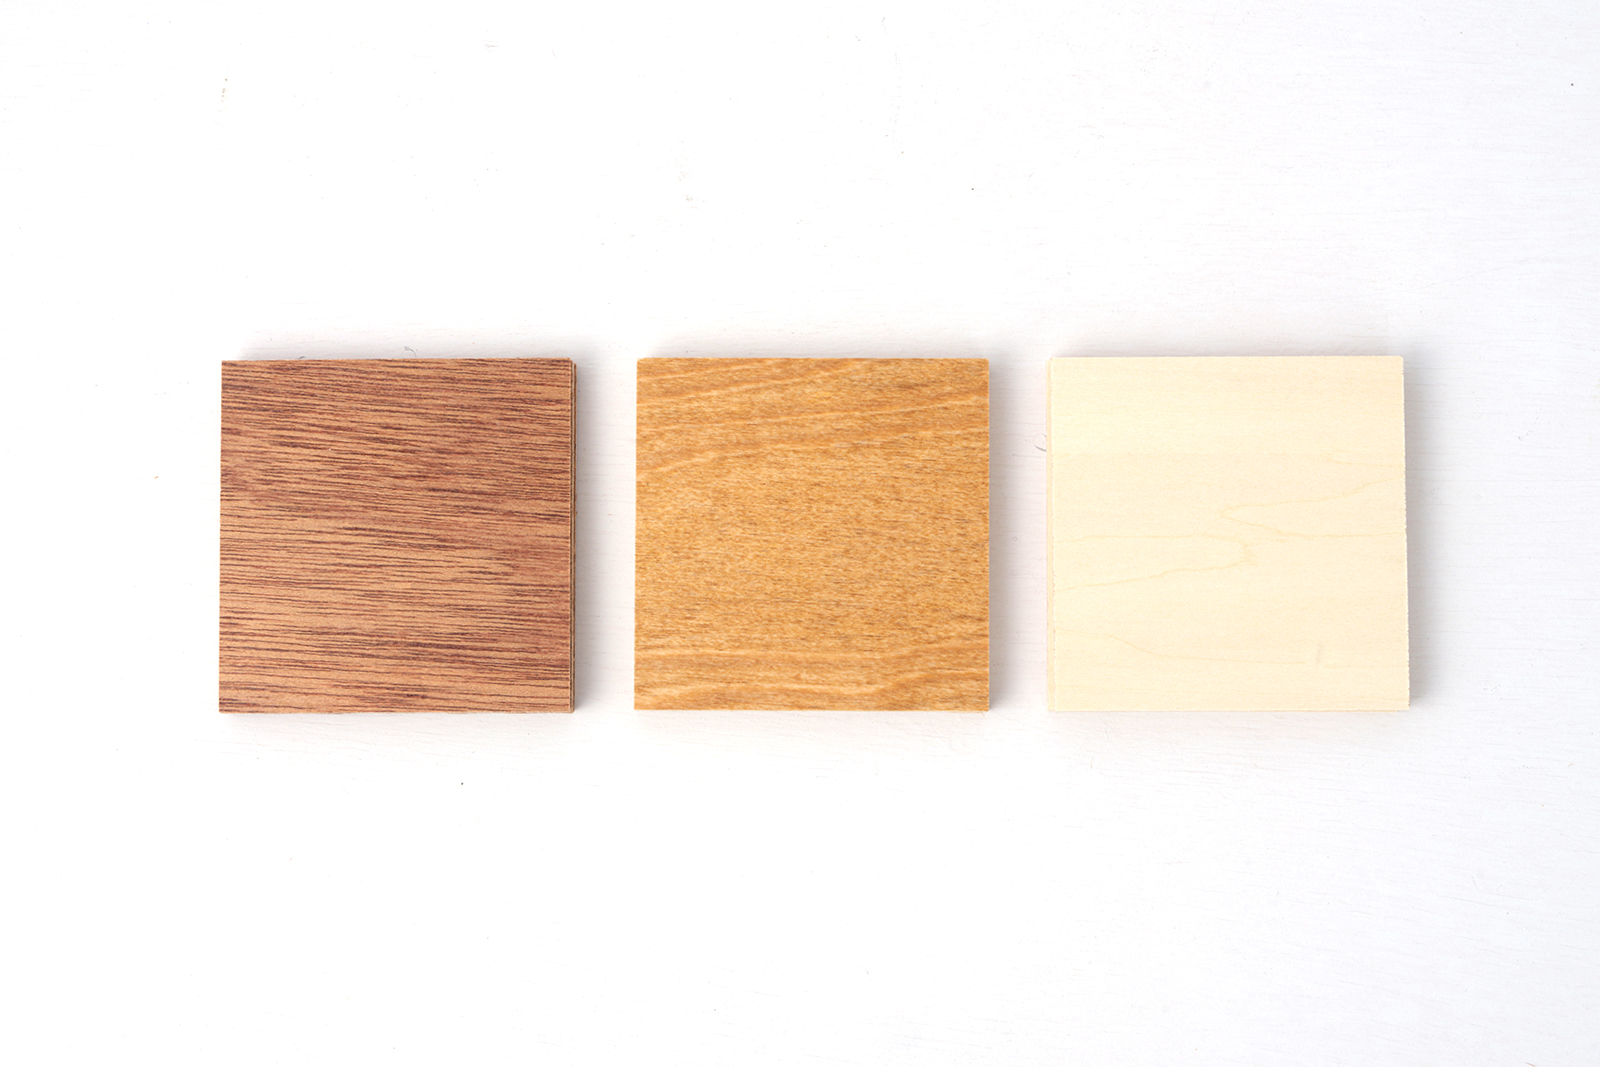 木製ミニマルキッチン ラワン W1800×D550 KB-KC016-16-G183 仕上げは3種類あります。左からラワン・バーチ・シナ。各商品ページをご確認ください